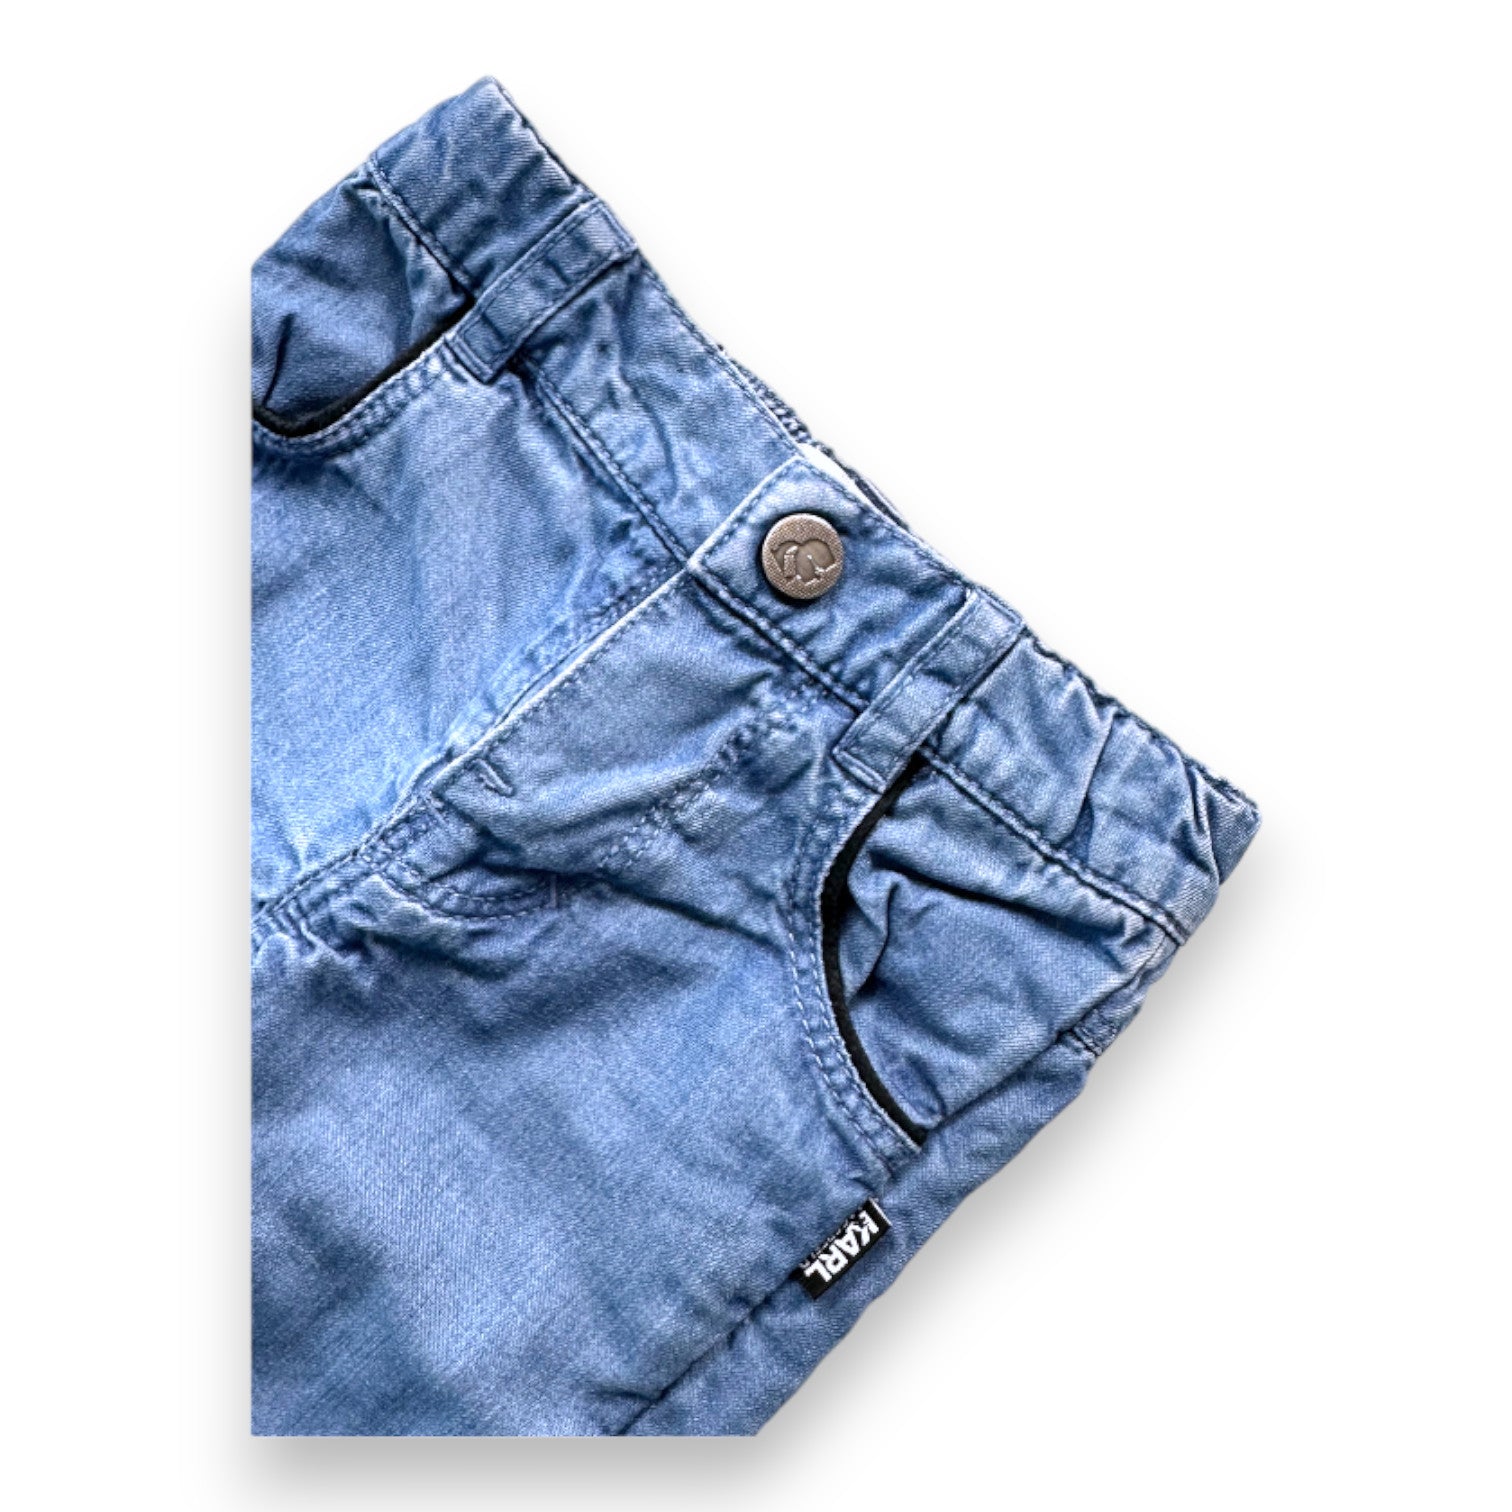 KARL LAGERFELD - Pantalon en jean bleu - 1 mois